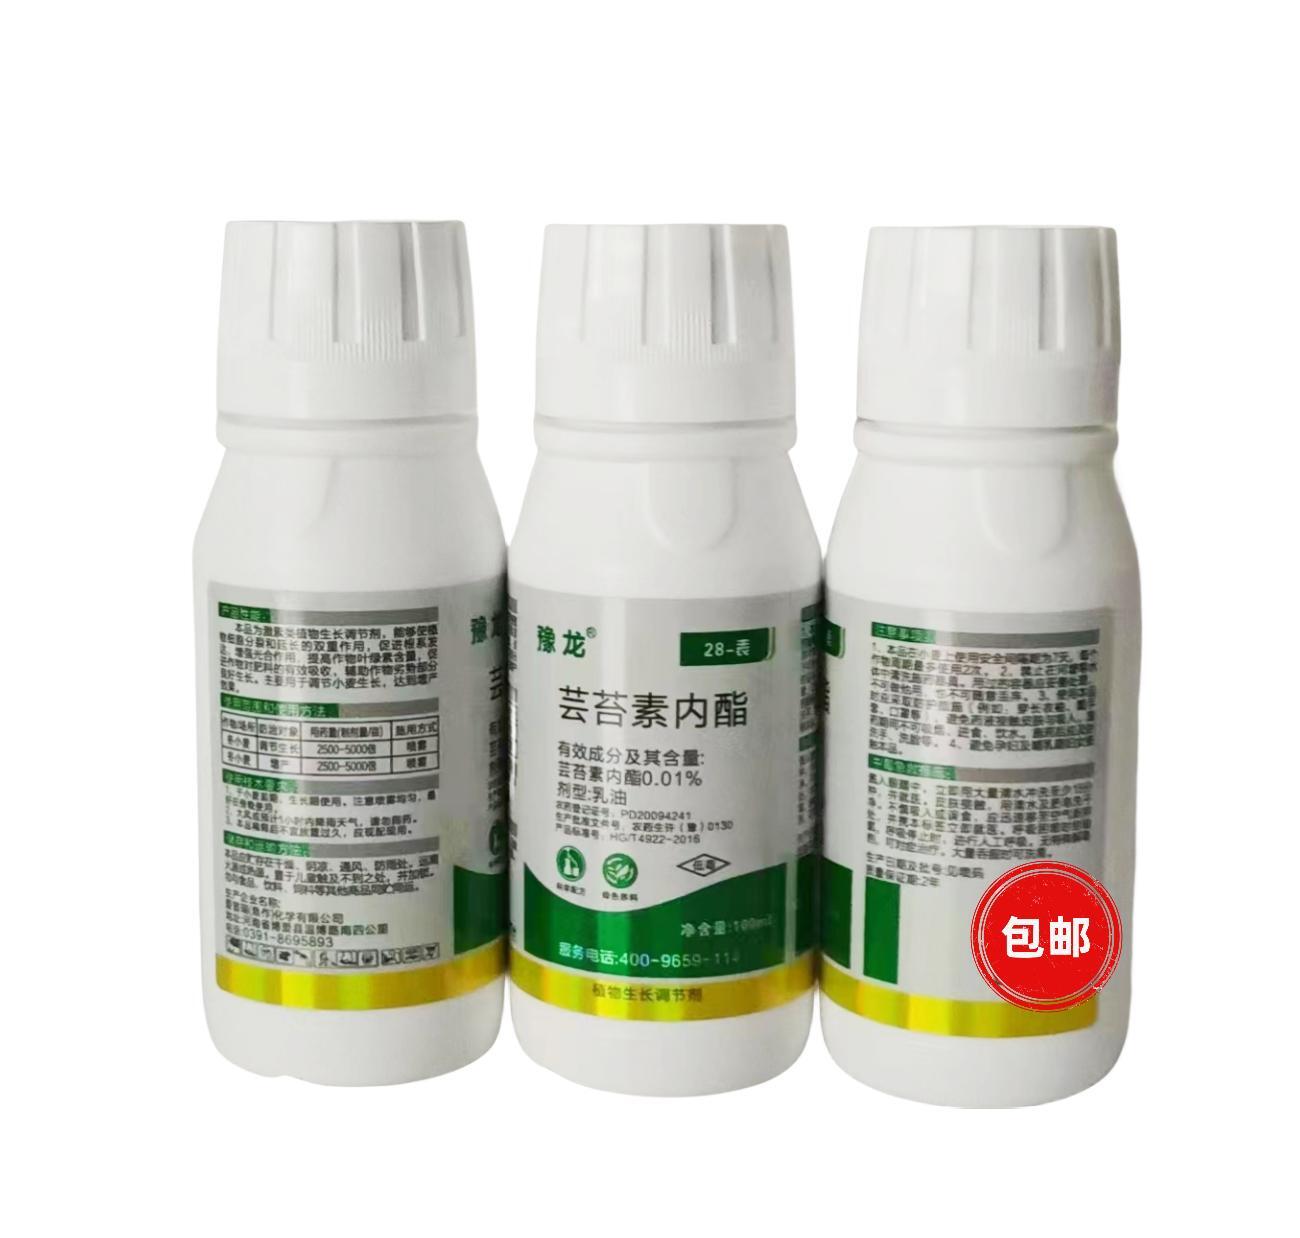 爱普瑞 豫龙28-表 0.01%芸苔素内脂 乳油